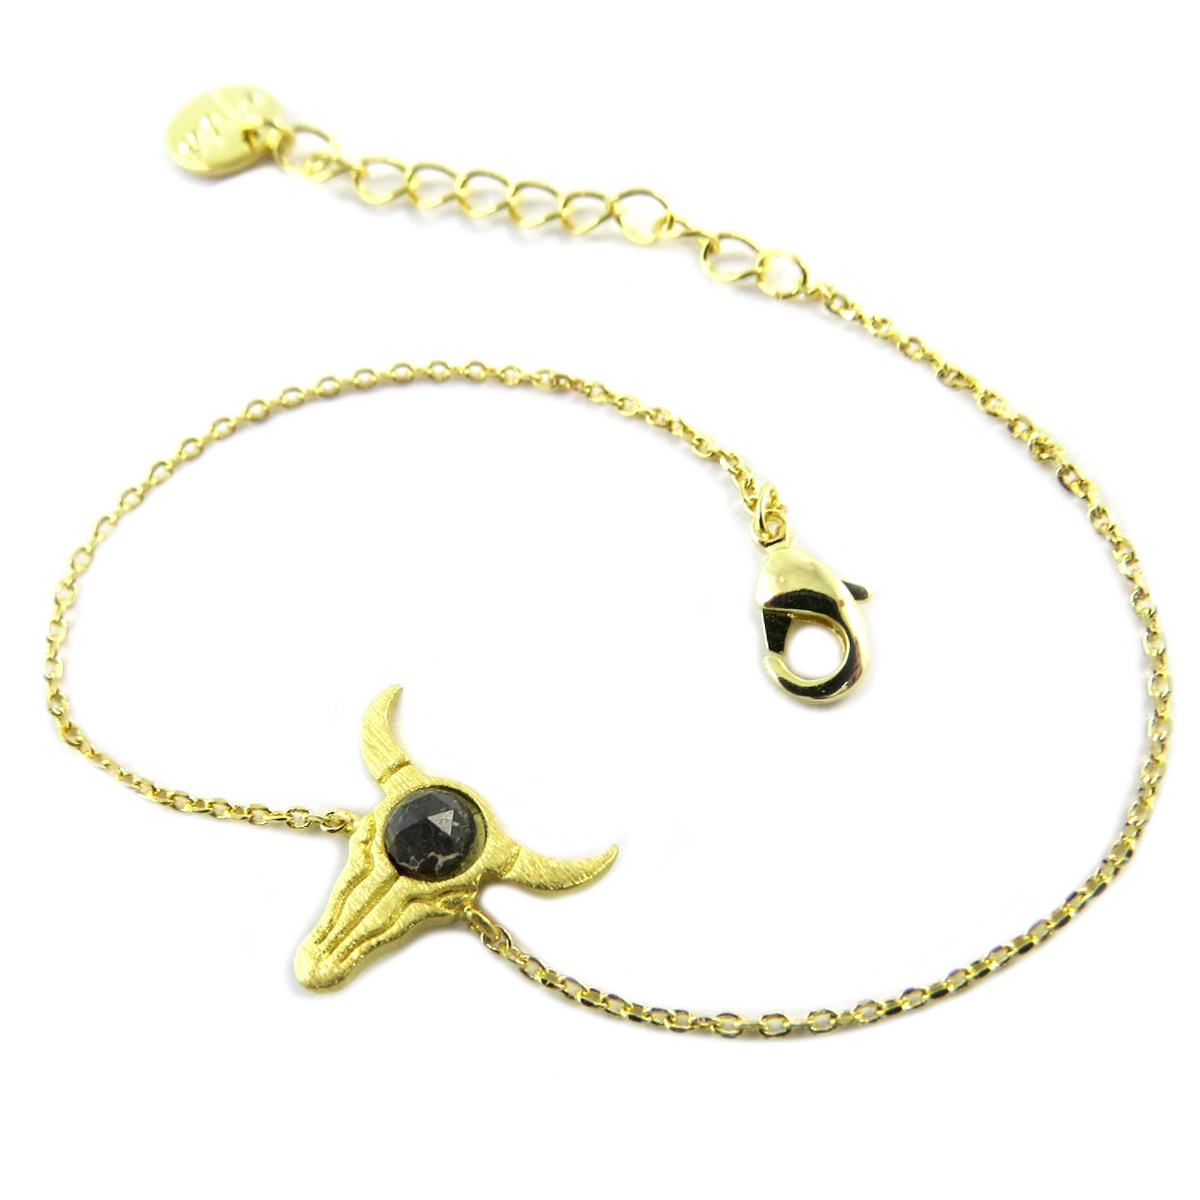 Bracelet artisanal \'Boho\' noir doré (crâne de bison) - 14x14 mm - [Q0979]